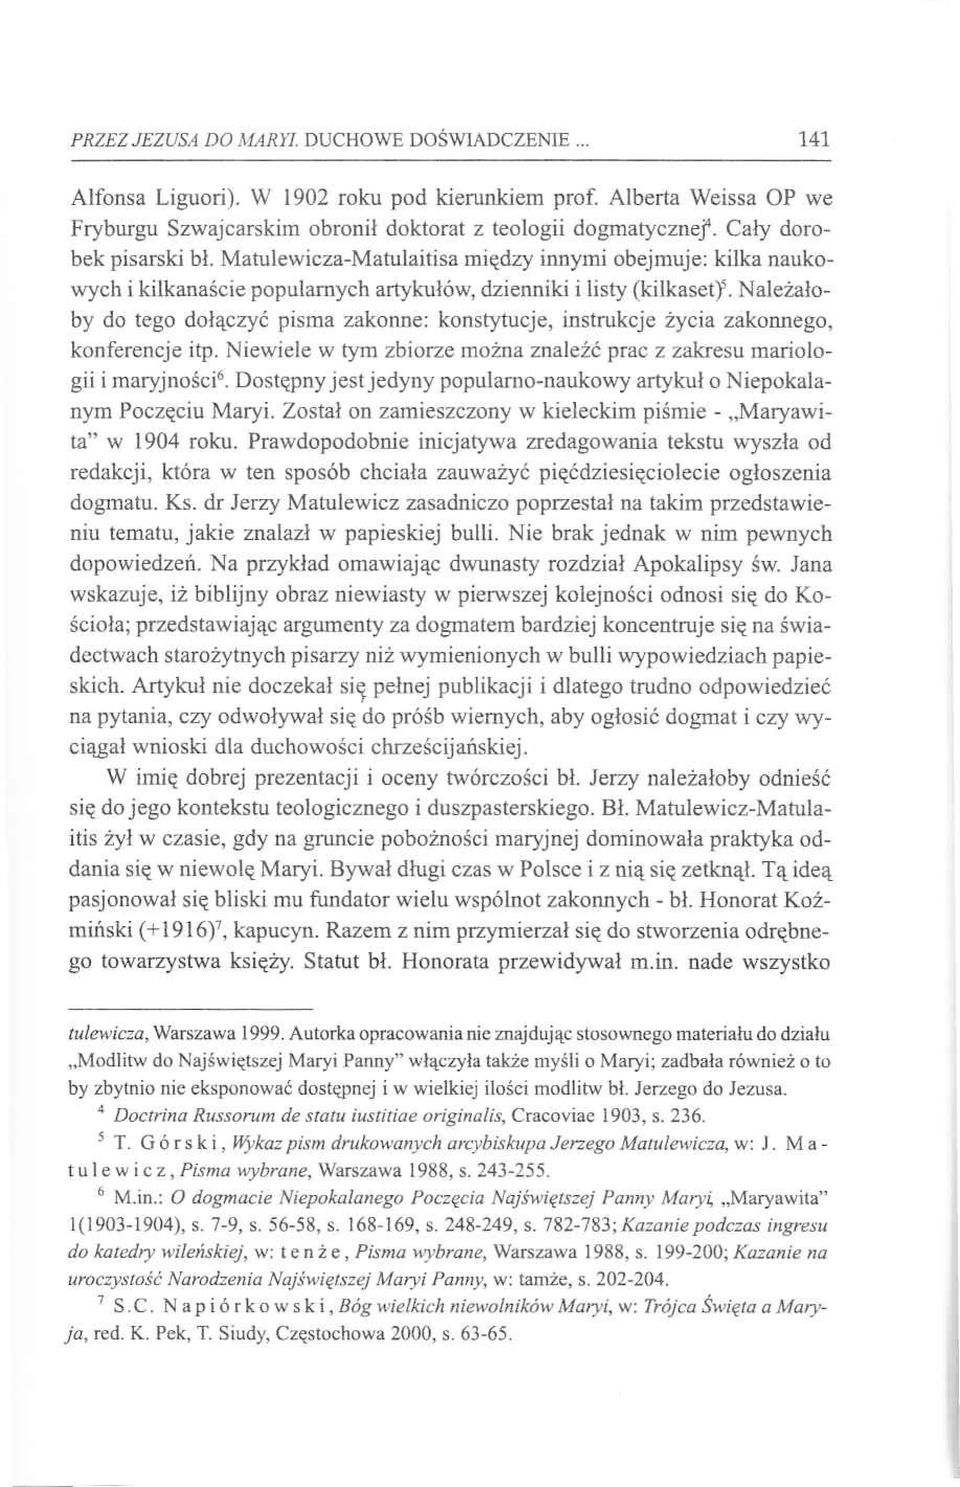 Matulewicza-Matulaitisa między innymi obejmuje: kilka naukowych i kilkanaście popularnych artykułów, dzienniki i listy (kilkaset)5.